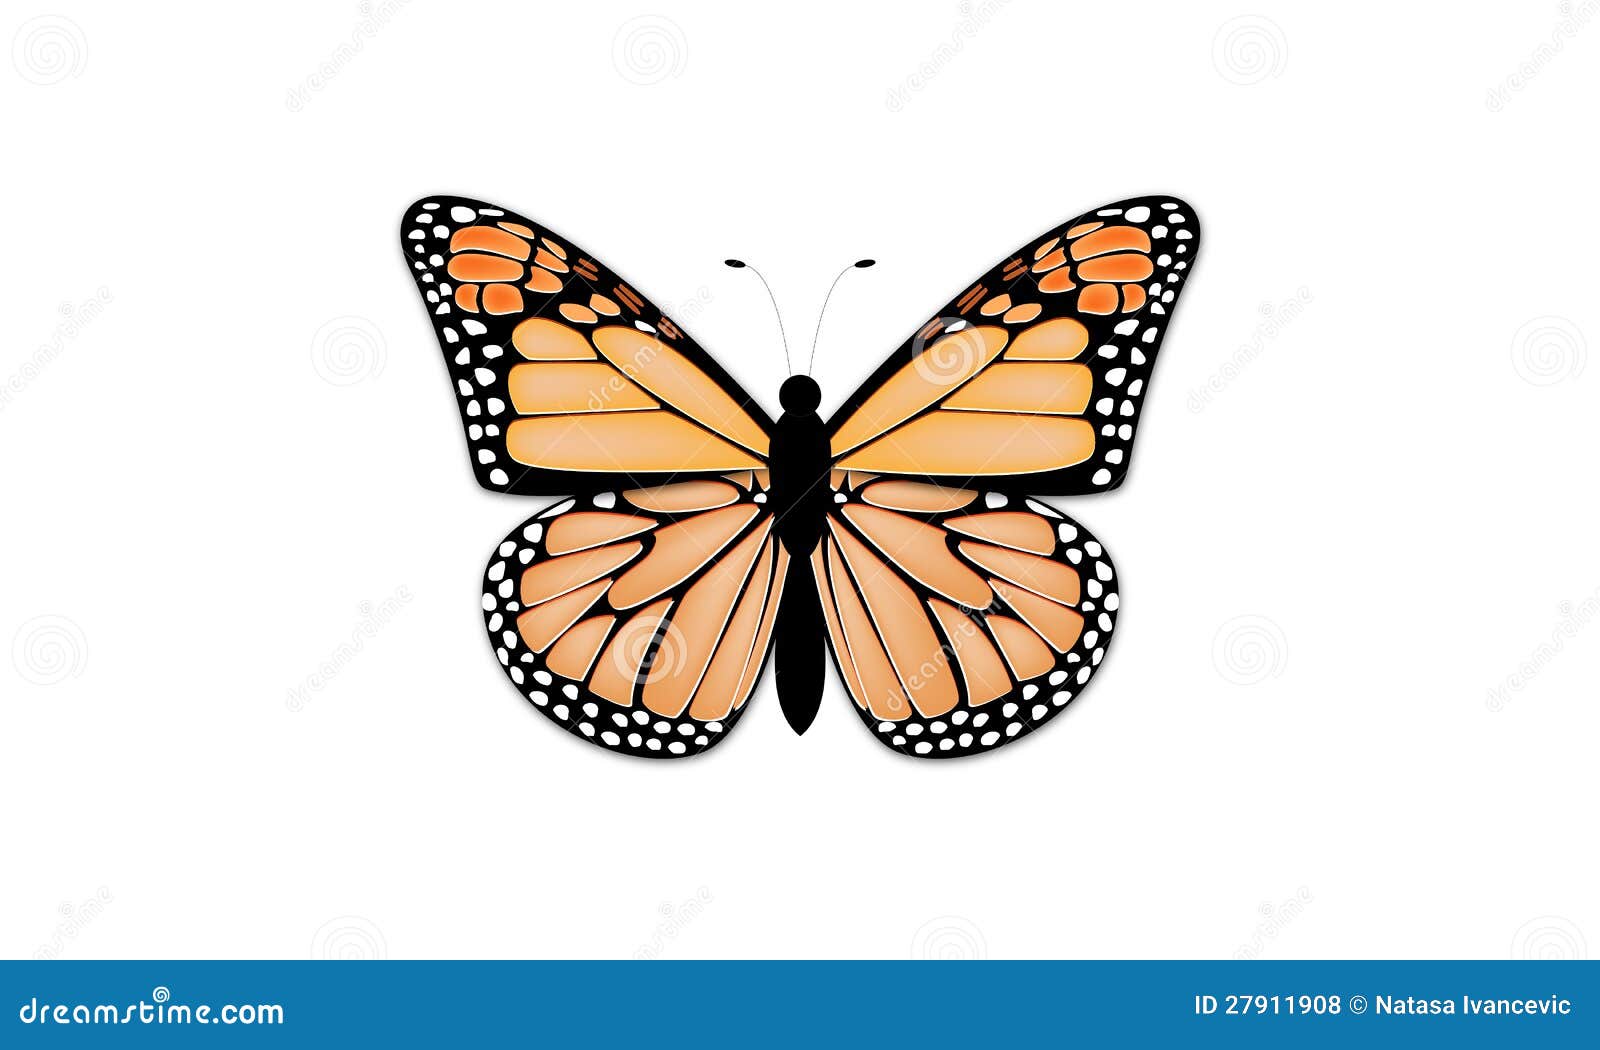  - butterfly-27911908